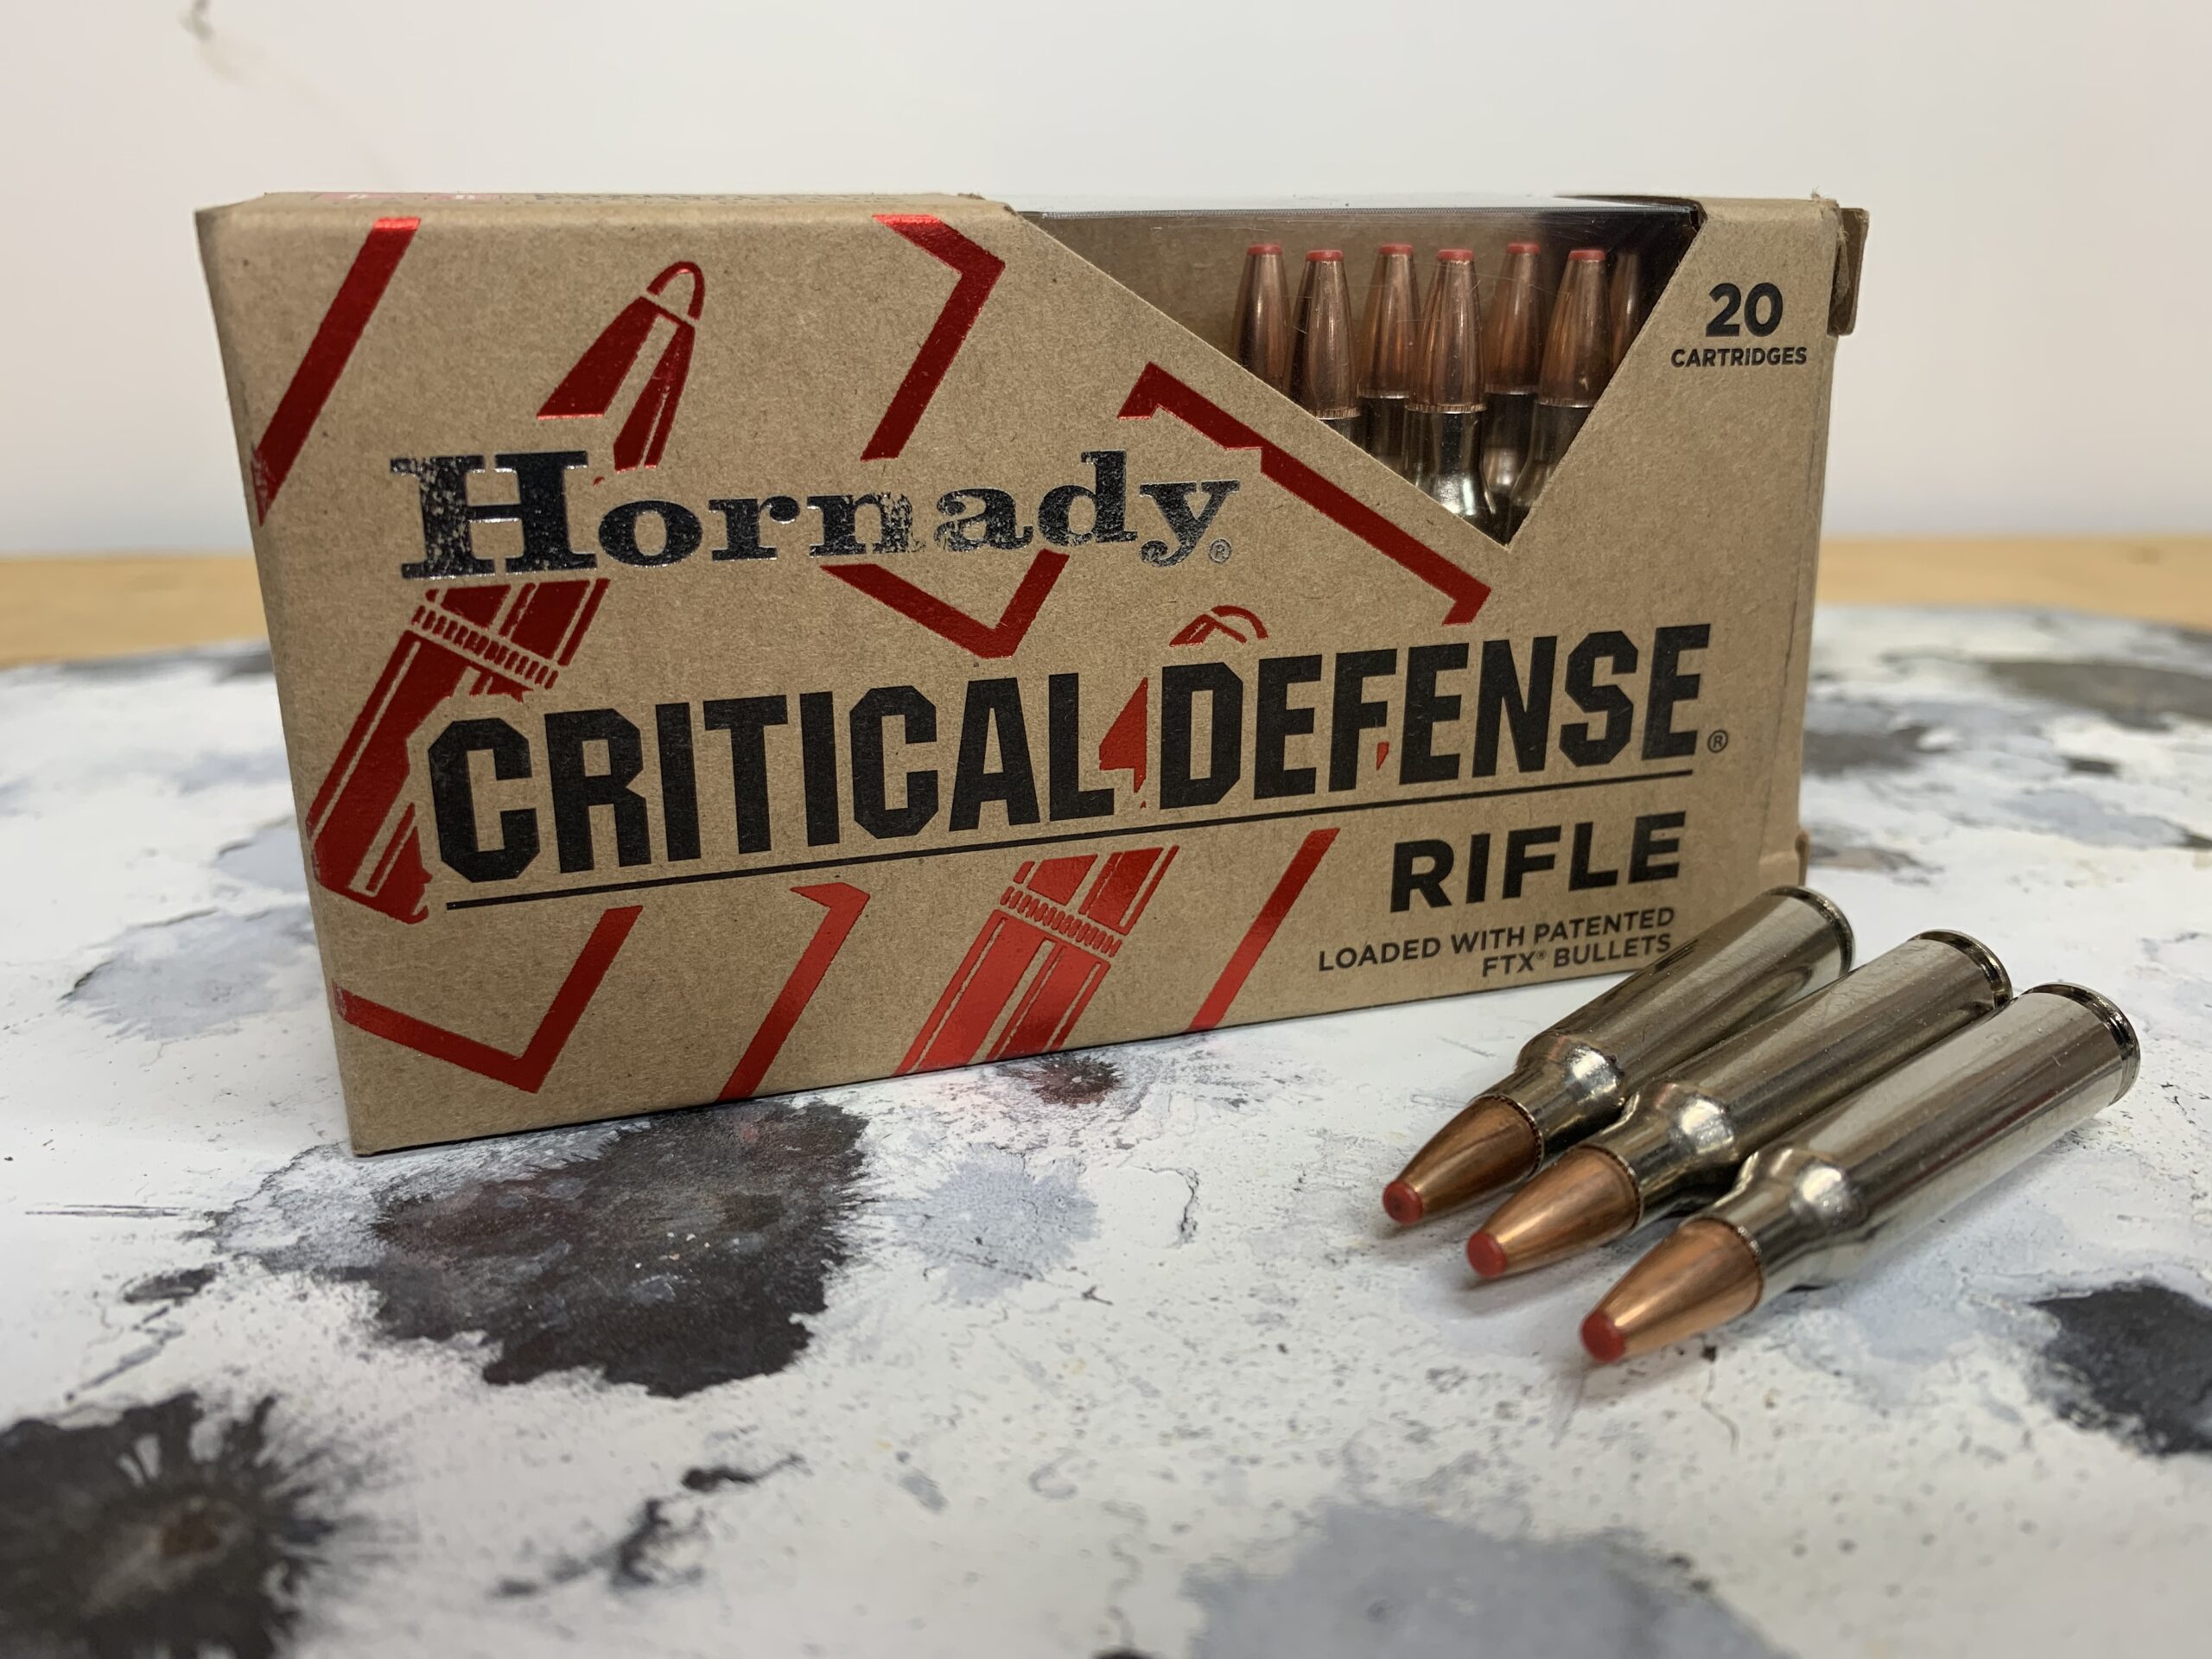 hornady 73gn critical defense ar 15 ammo